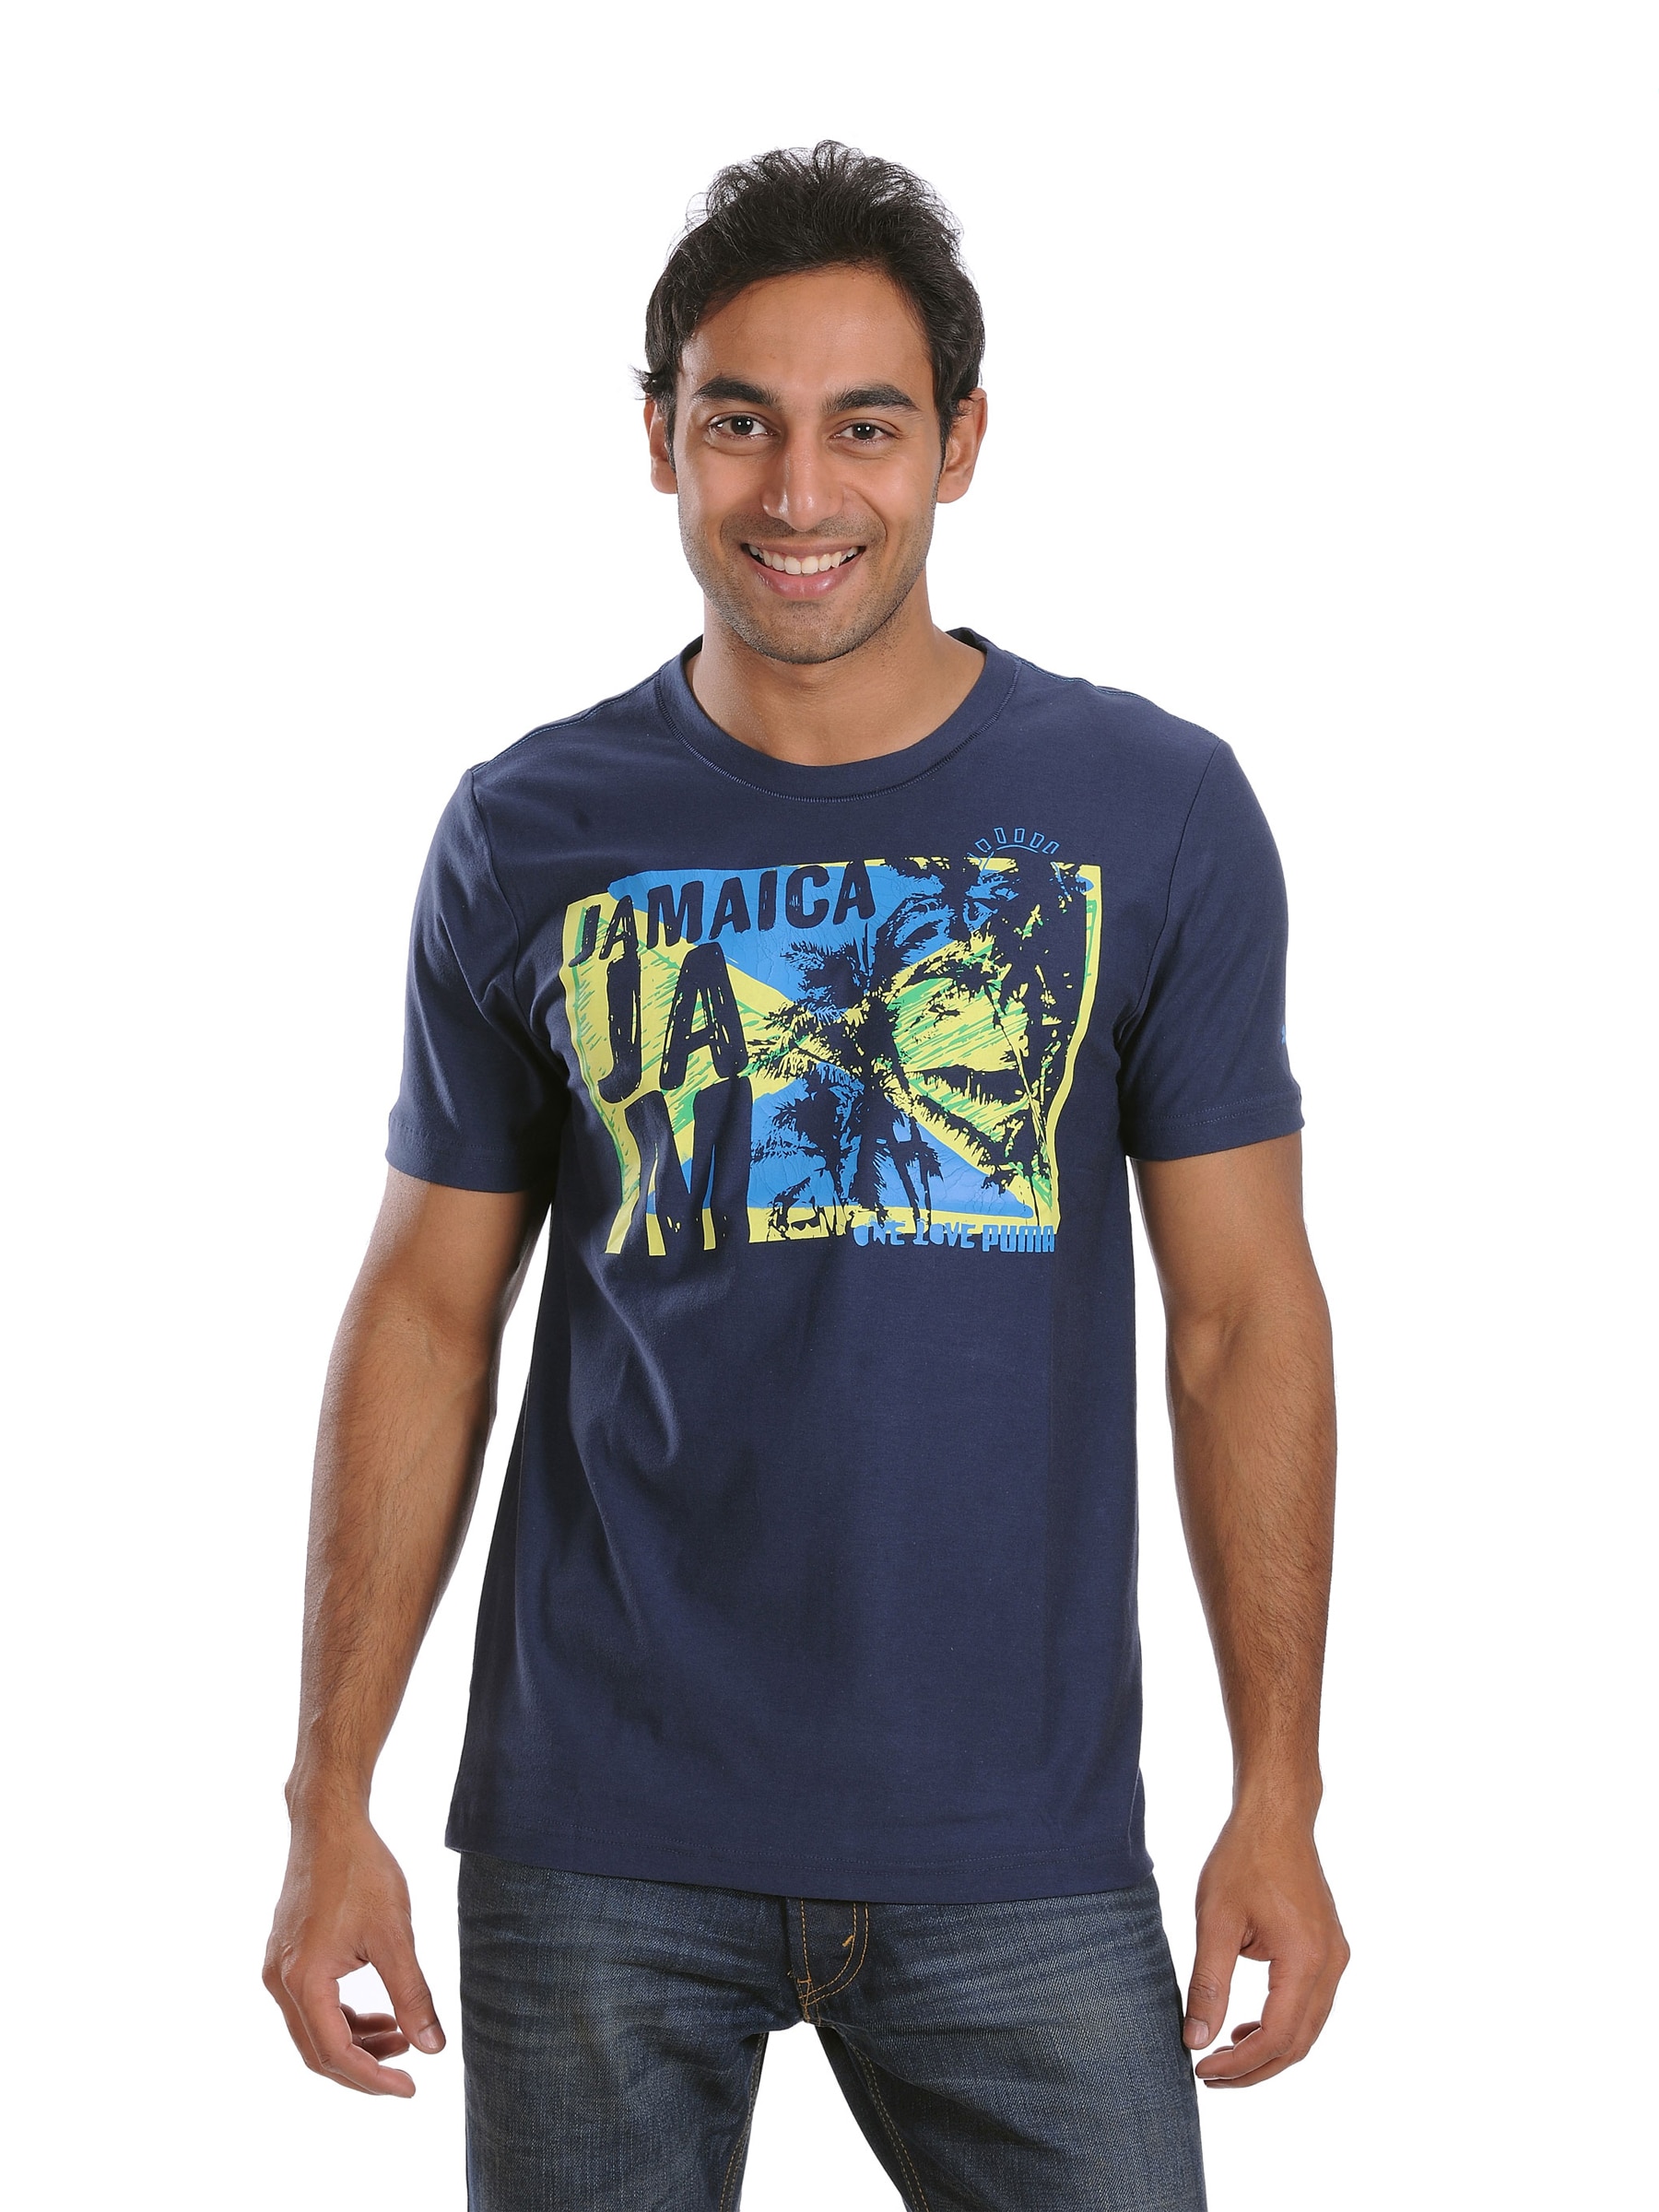 Puma Men's Jamaica Jam Navy Blue T-shirt